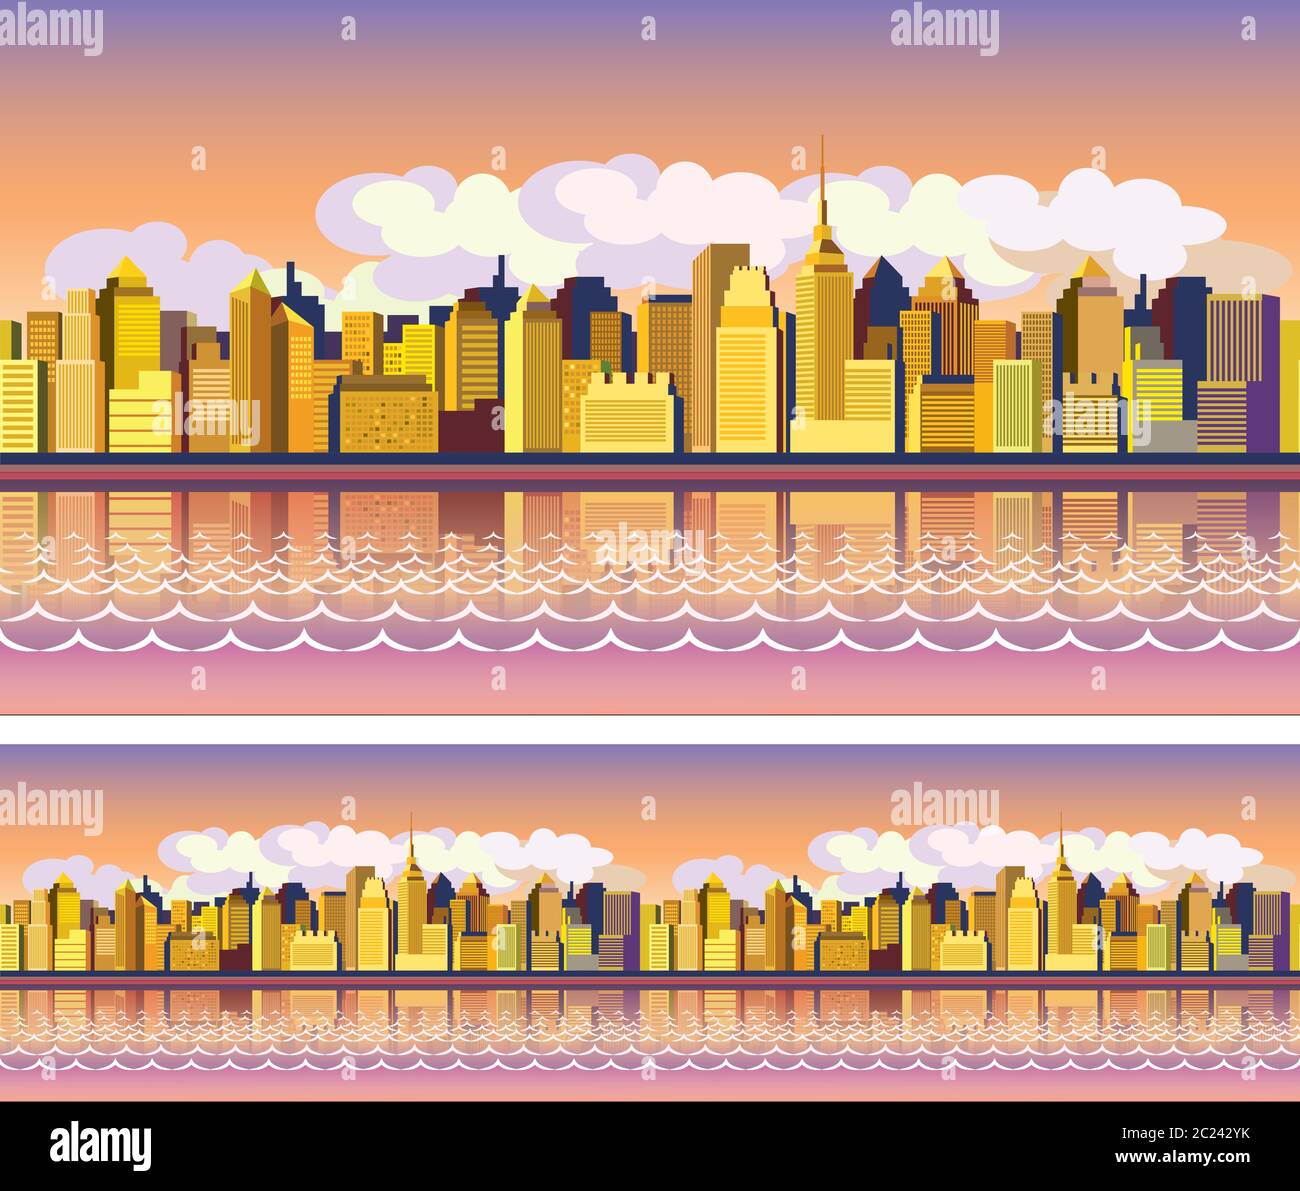 Stilisierte nahtlose Panorama-Komposition einer modernen Stadt im Morgenlicht Stock Vektor